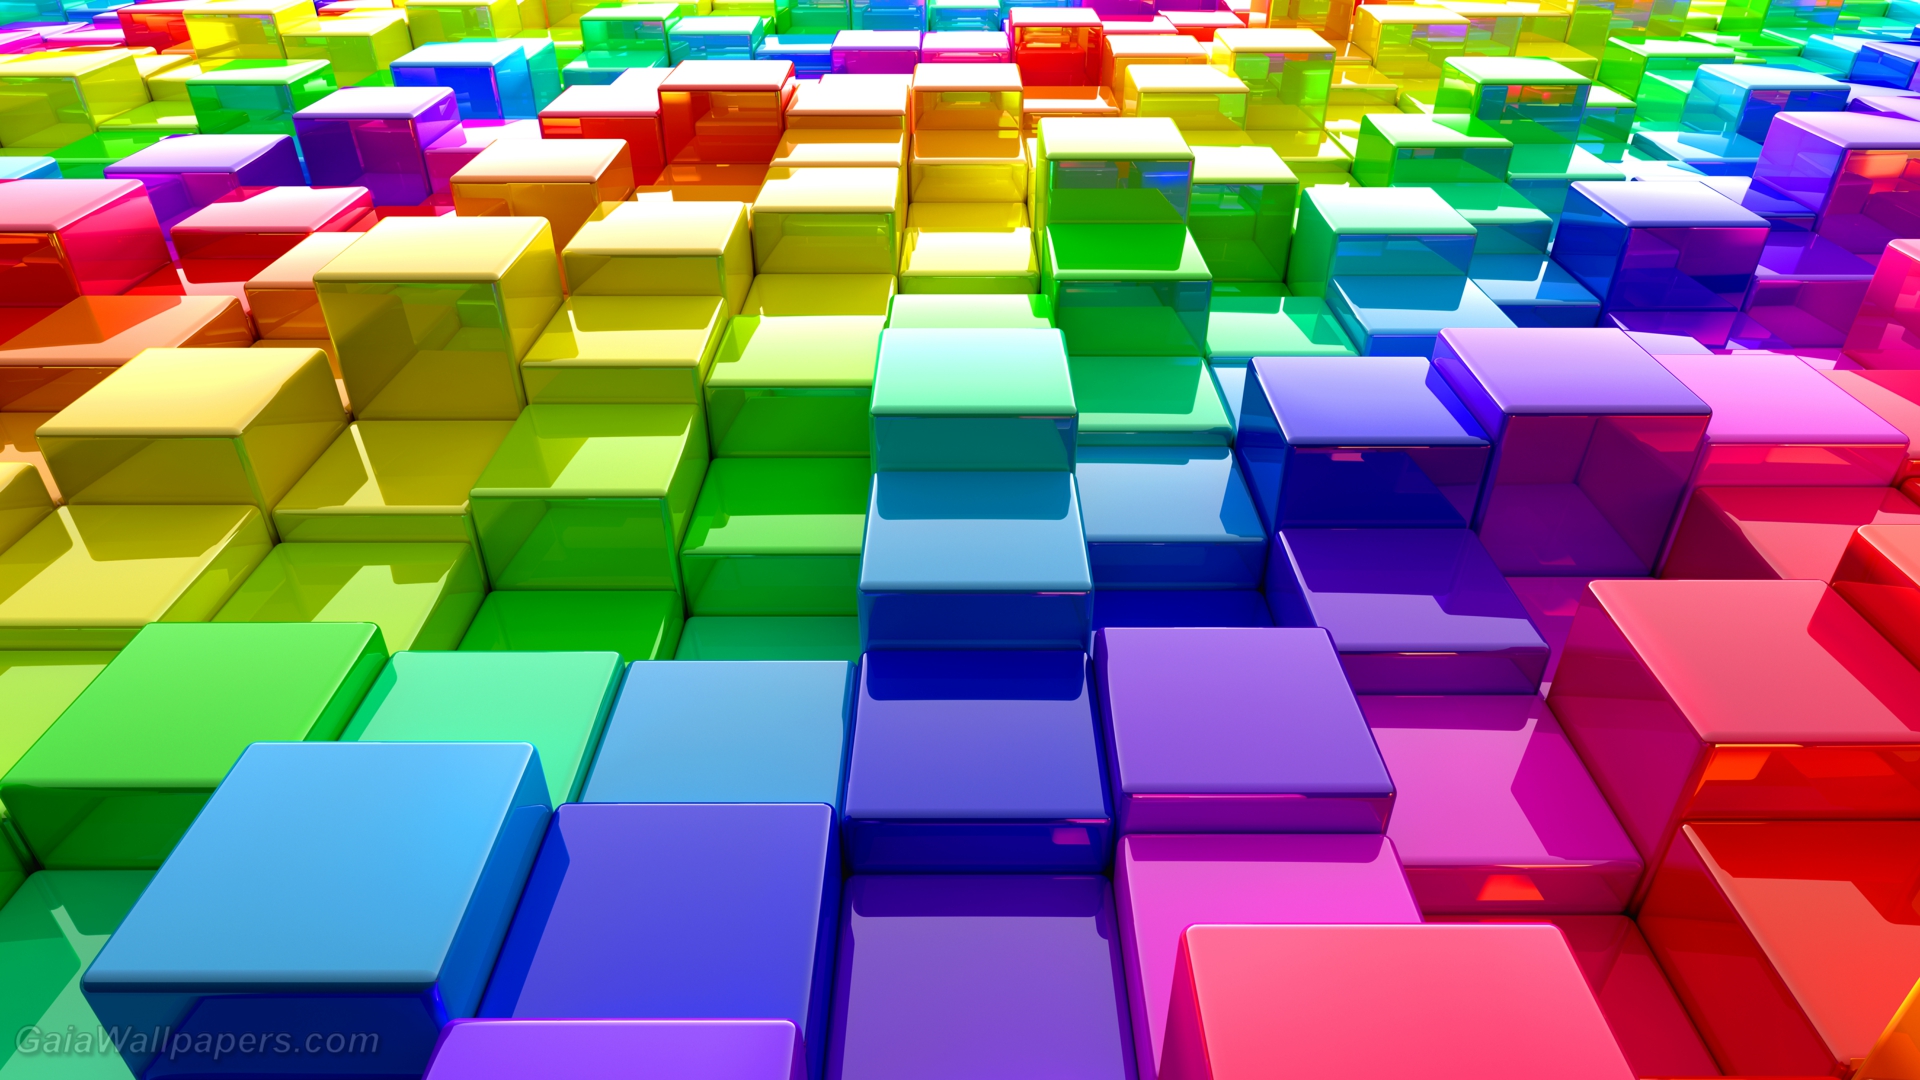 Rainbow matrix of color cubes wallpaper 1920x1080